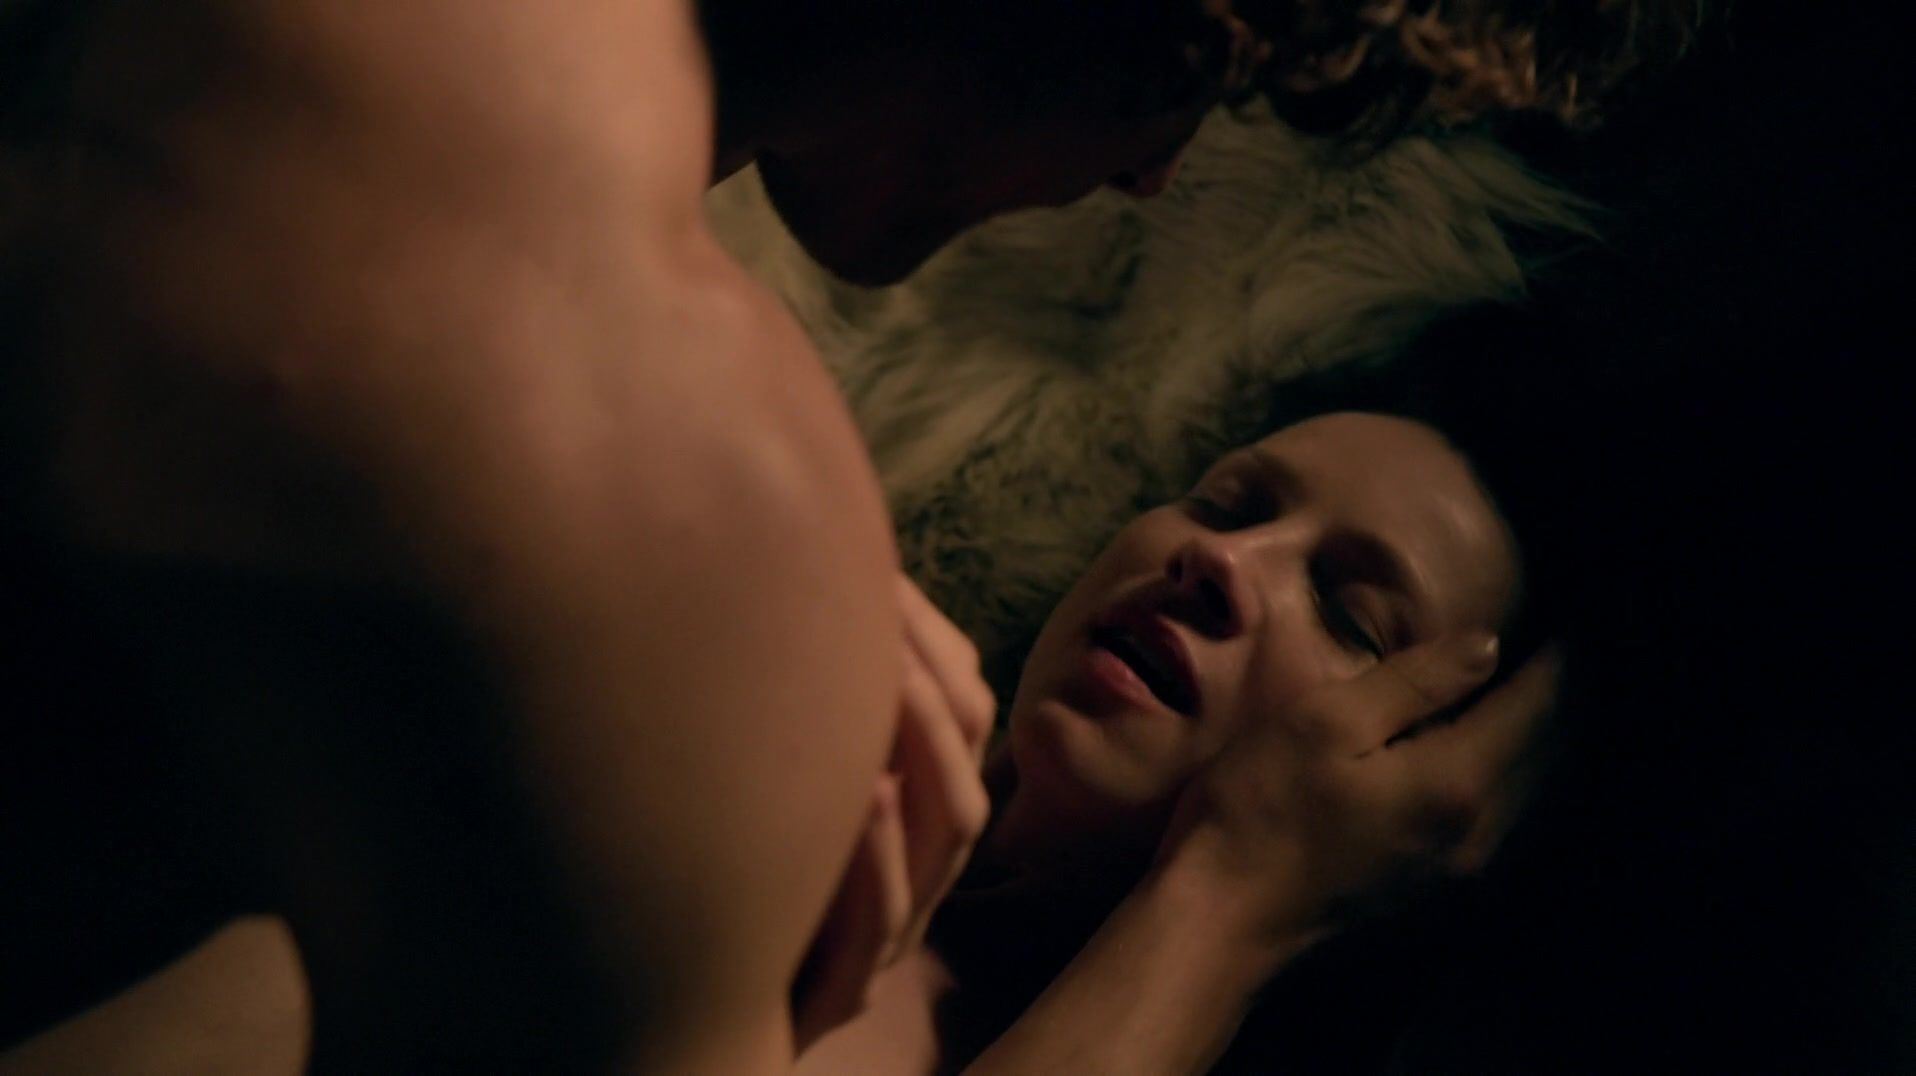 Pervert Sex scene of naked Caitriona Balfe | TV show "Outlander" Crazy